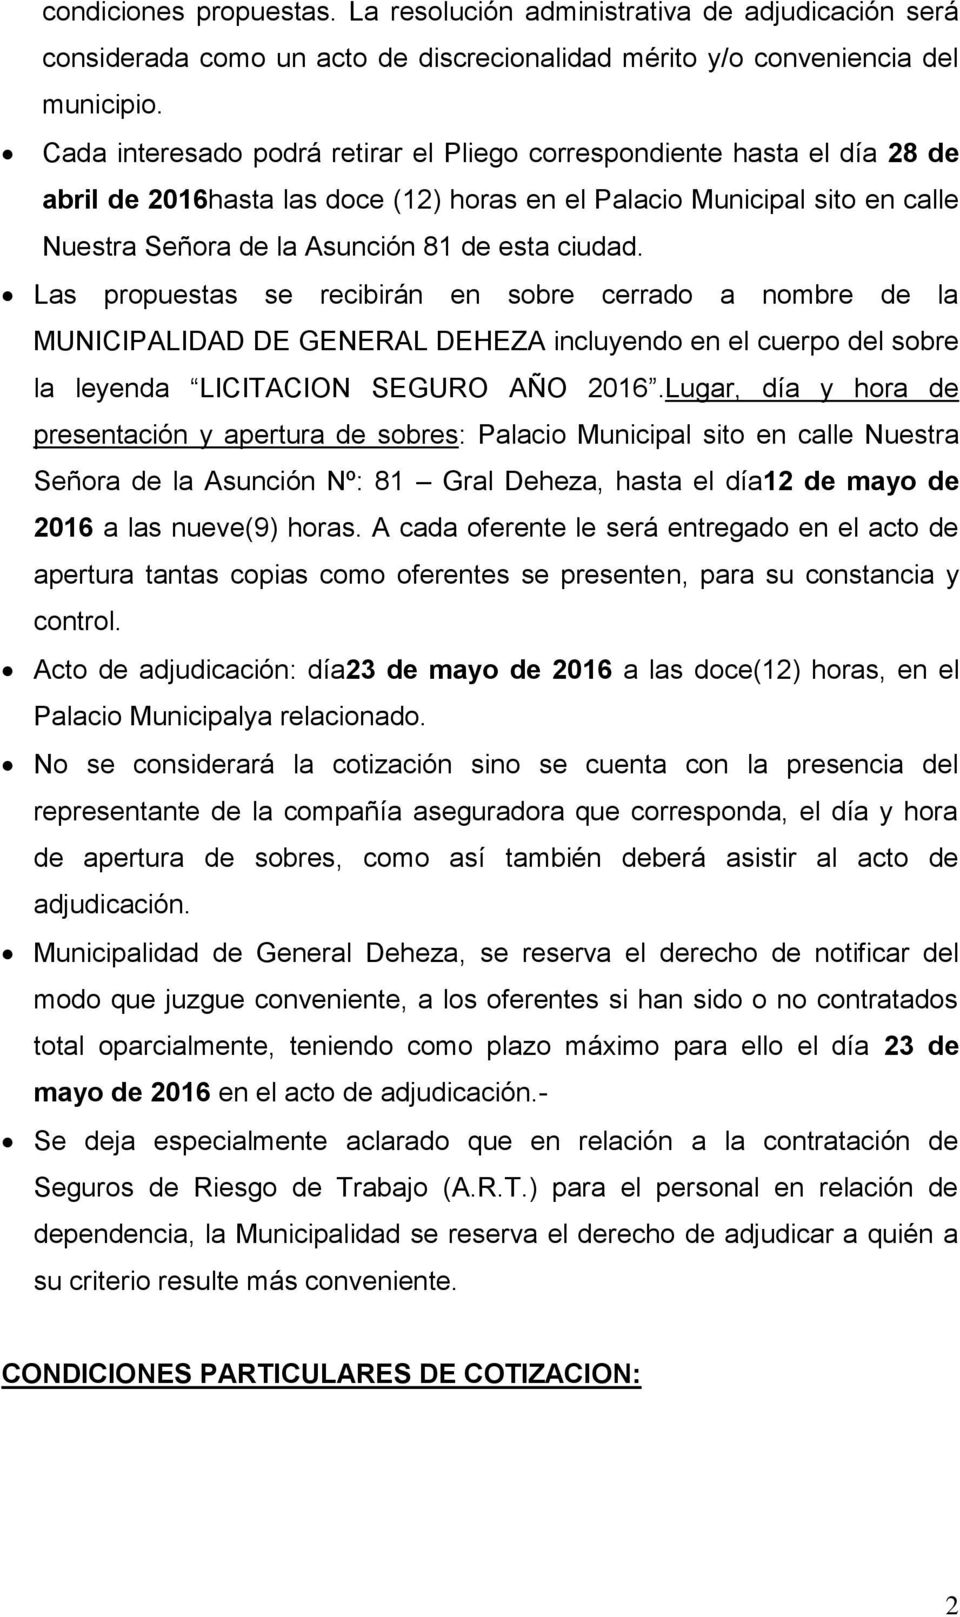 Las propuestas se recibirán en sobre cerrado a nombre de la MUNICIPALIDAD DE GENERAL DEHEZA incluyendo en el cuerpo del sobre la leyenda LICITACION SEGURO AÑO 2016.